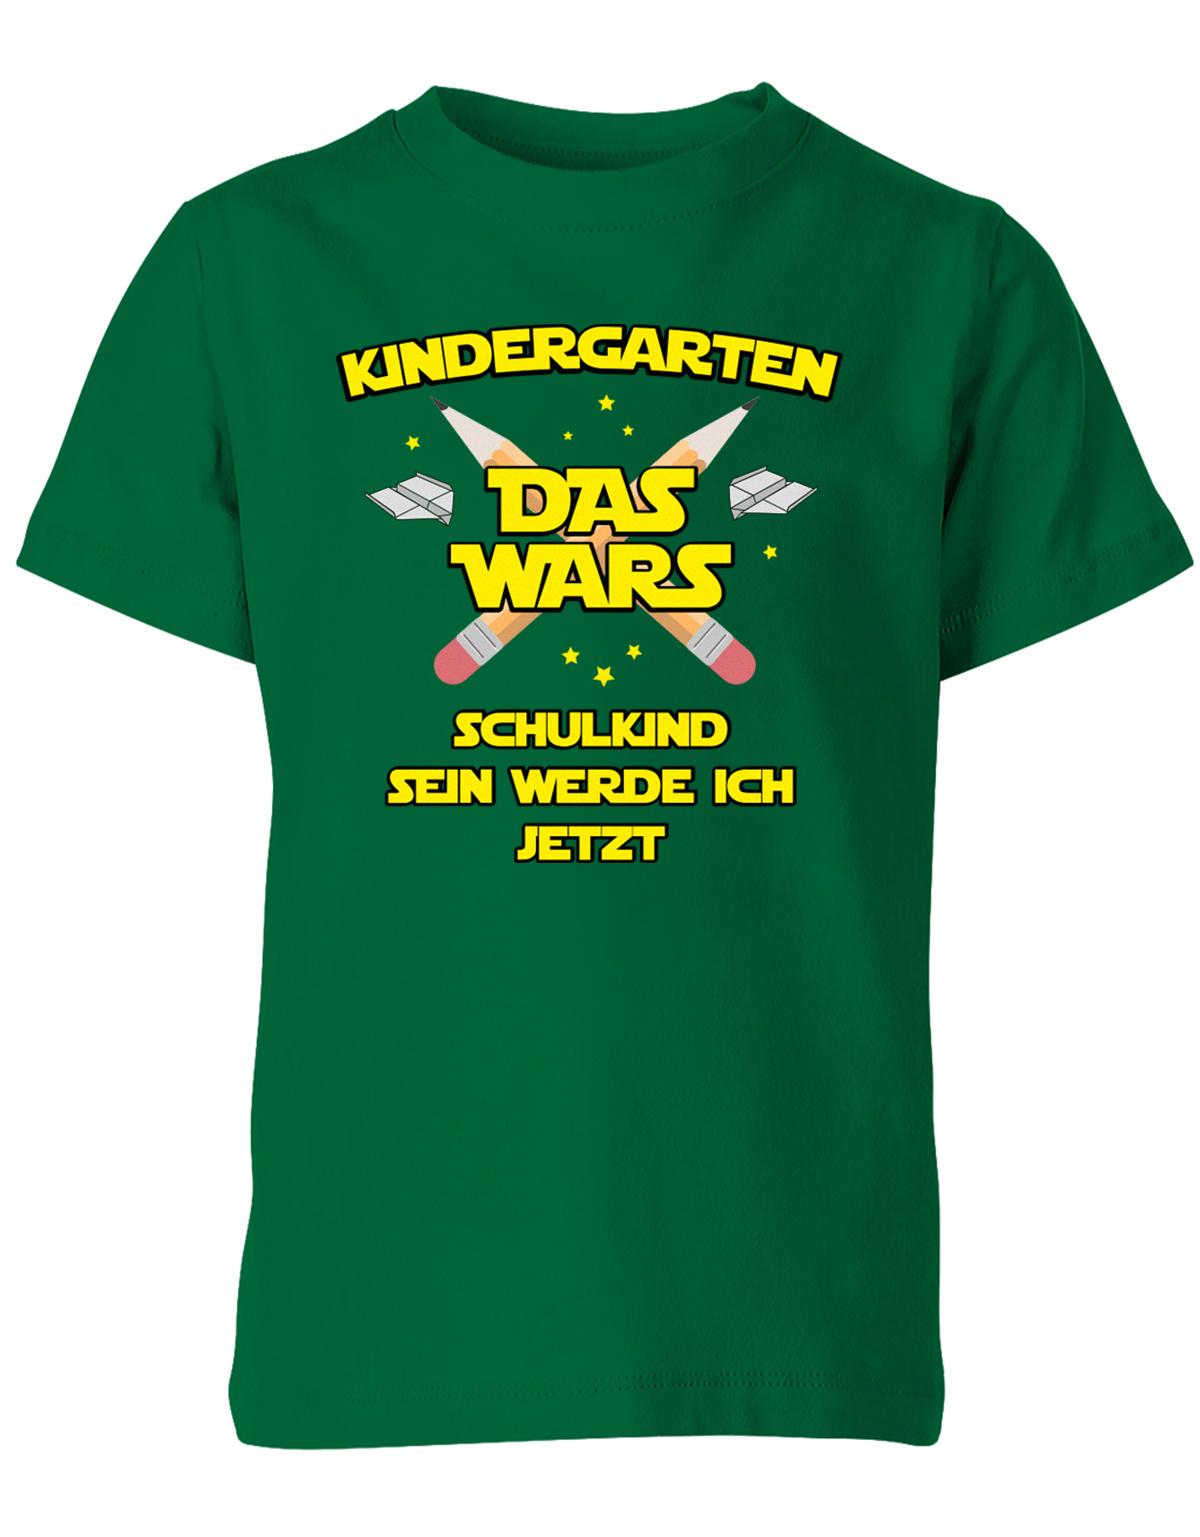 Kindergarten Das Wars Schulkind sein werde ich jetzt - Kita Abgänger Shirt Grün